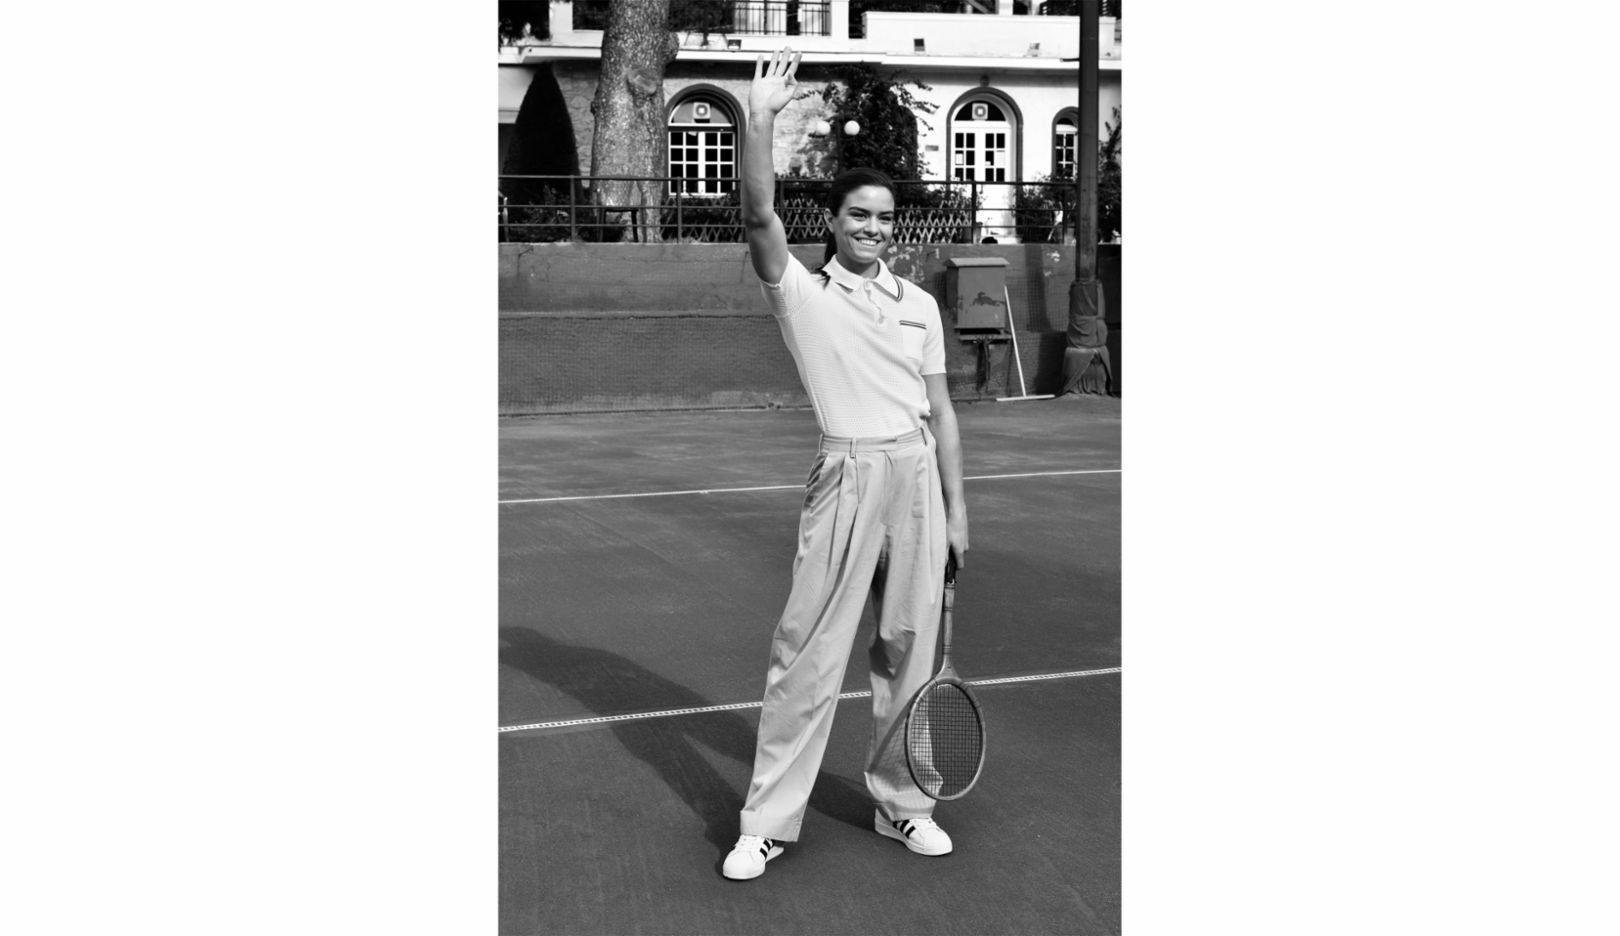 マリア・サッカリ、アテネ・ローン・テニス・クラブにて。「この写真は1930年代、1940年代へのオマージュです」とラドカ・リトムニェジツェ。「マリアはアテネで育った人で、彼女の祖父母と母もこの古いテニスクラブでプレーしていたんですって。だからこそ、このロケーションと雰囲気の中にいる彼女を見せたいと思って」。 